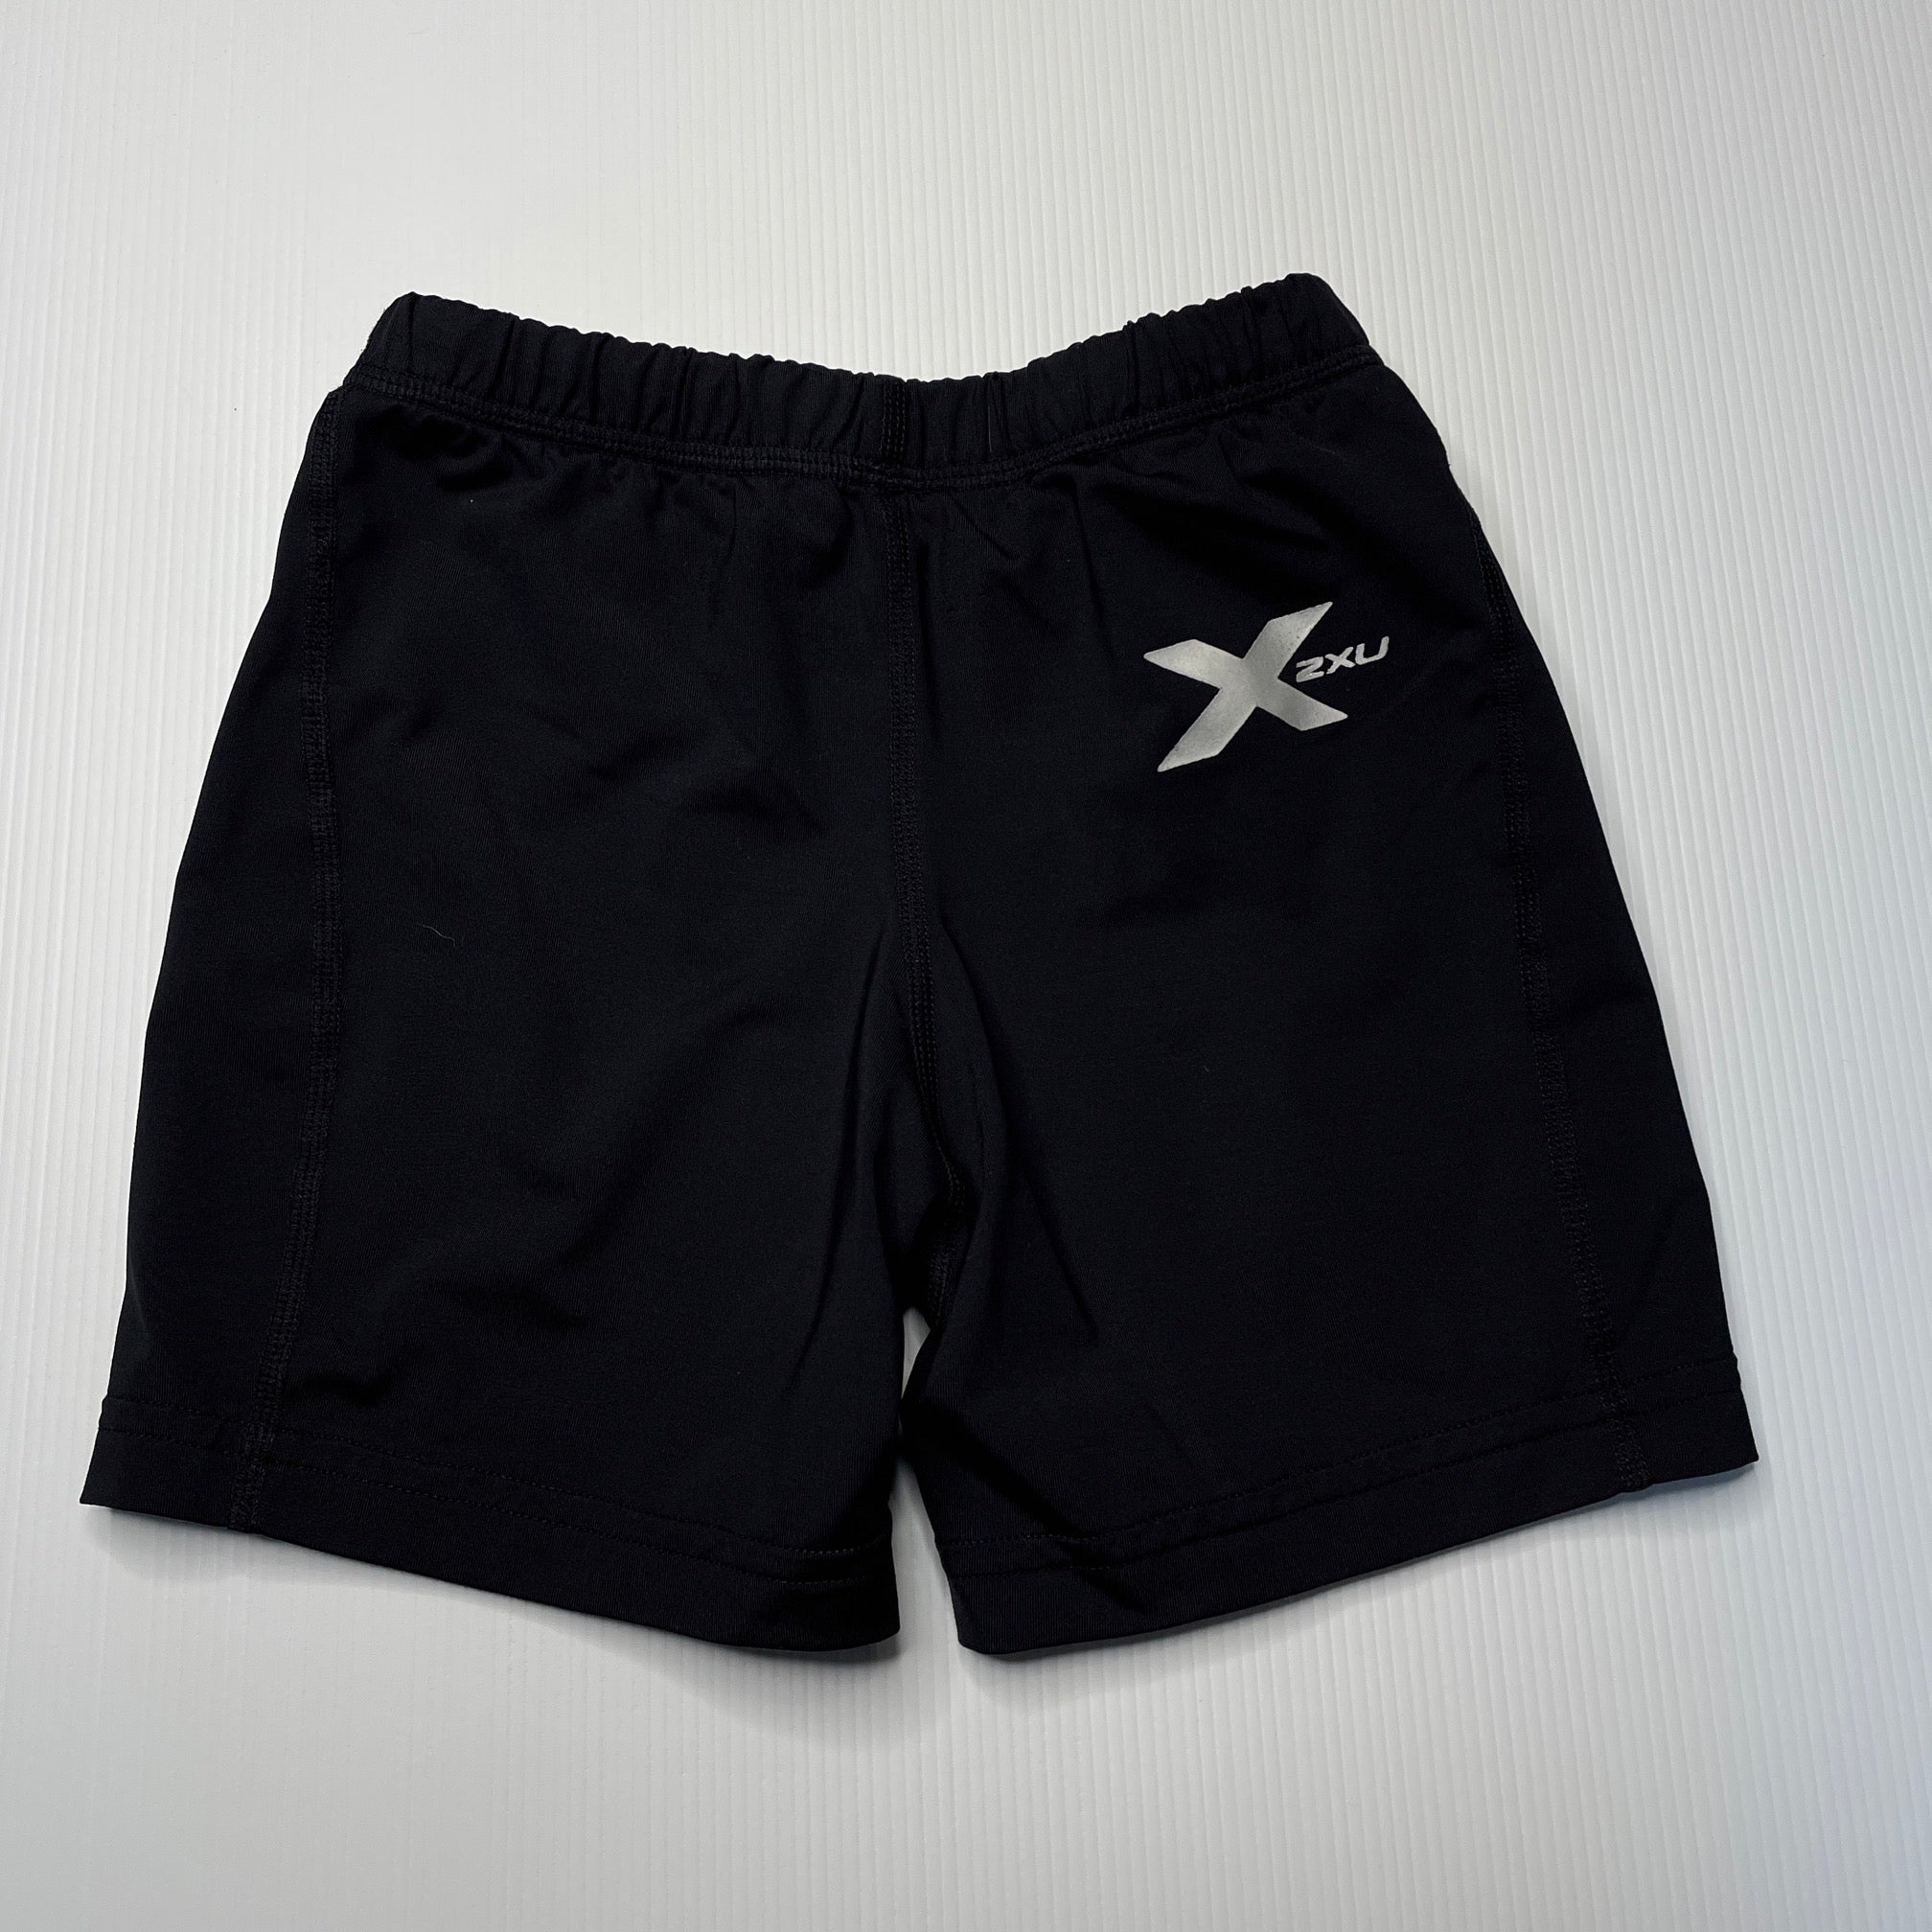 2XU Boys Compression Shorts